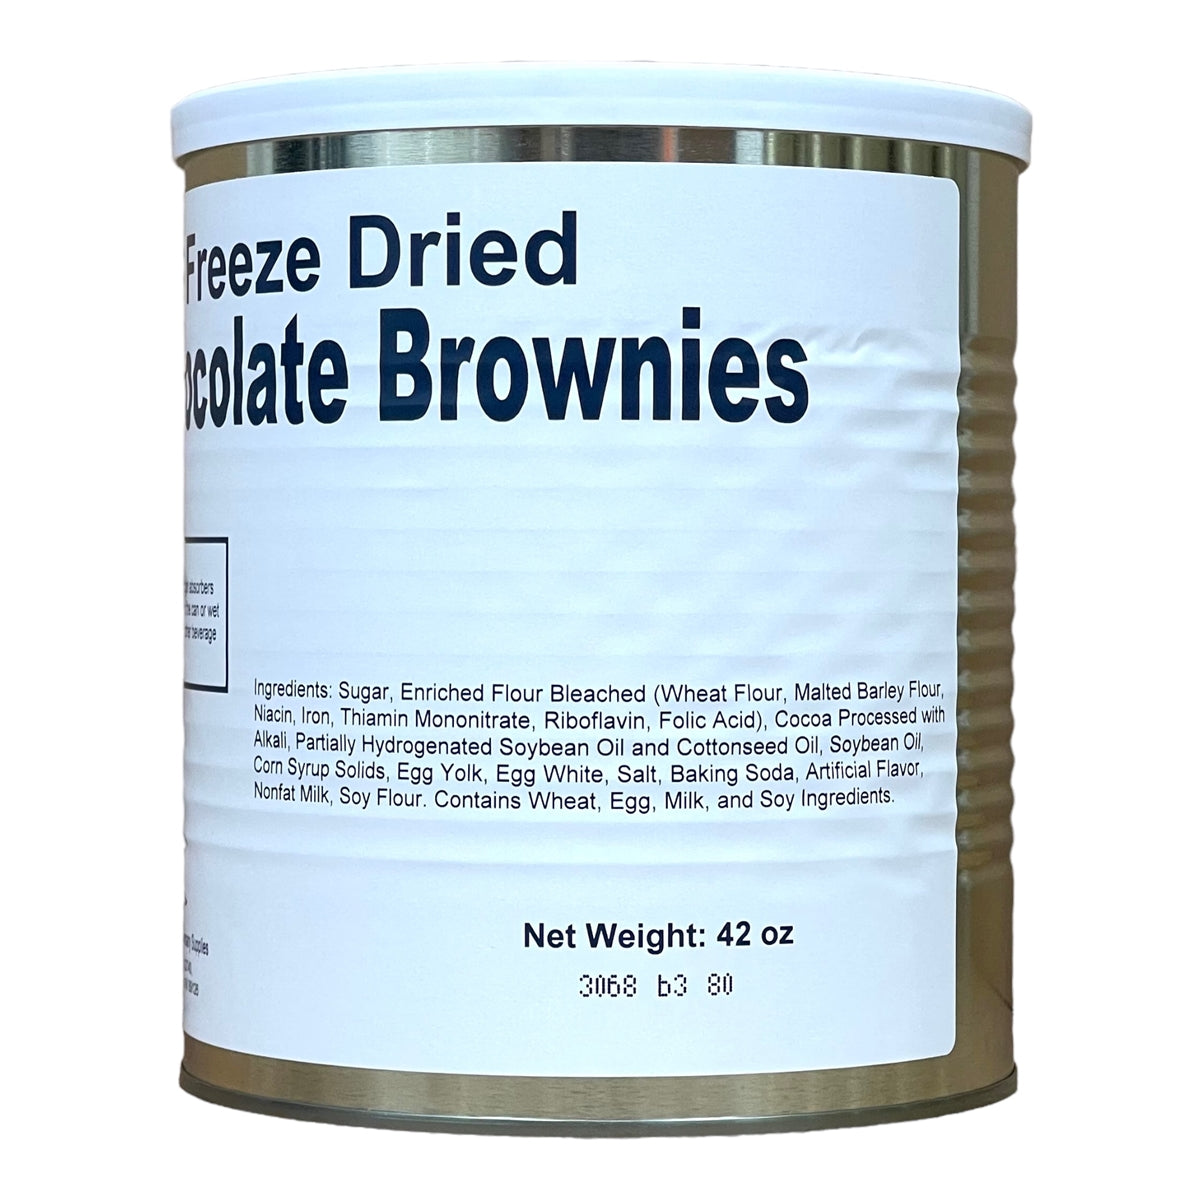 Freeze Dried Chocolate Brownies